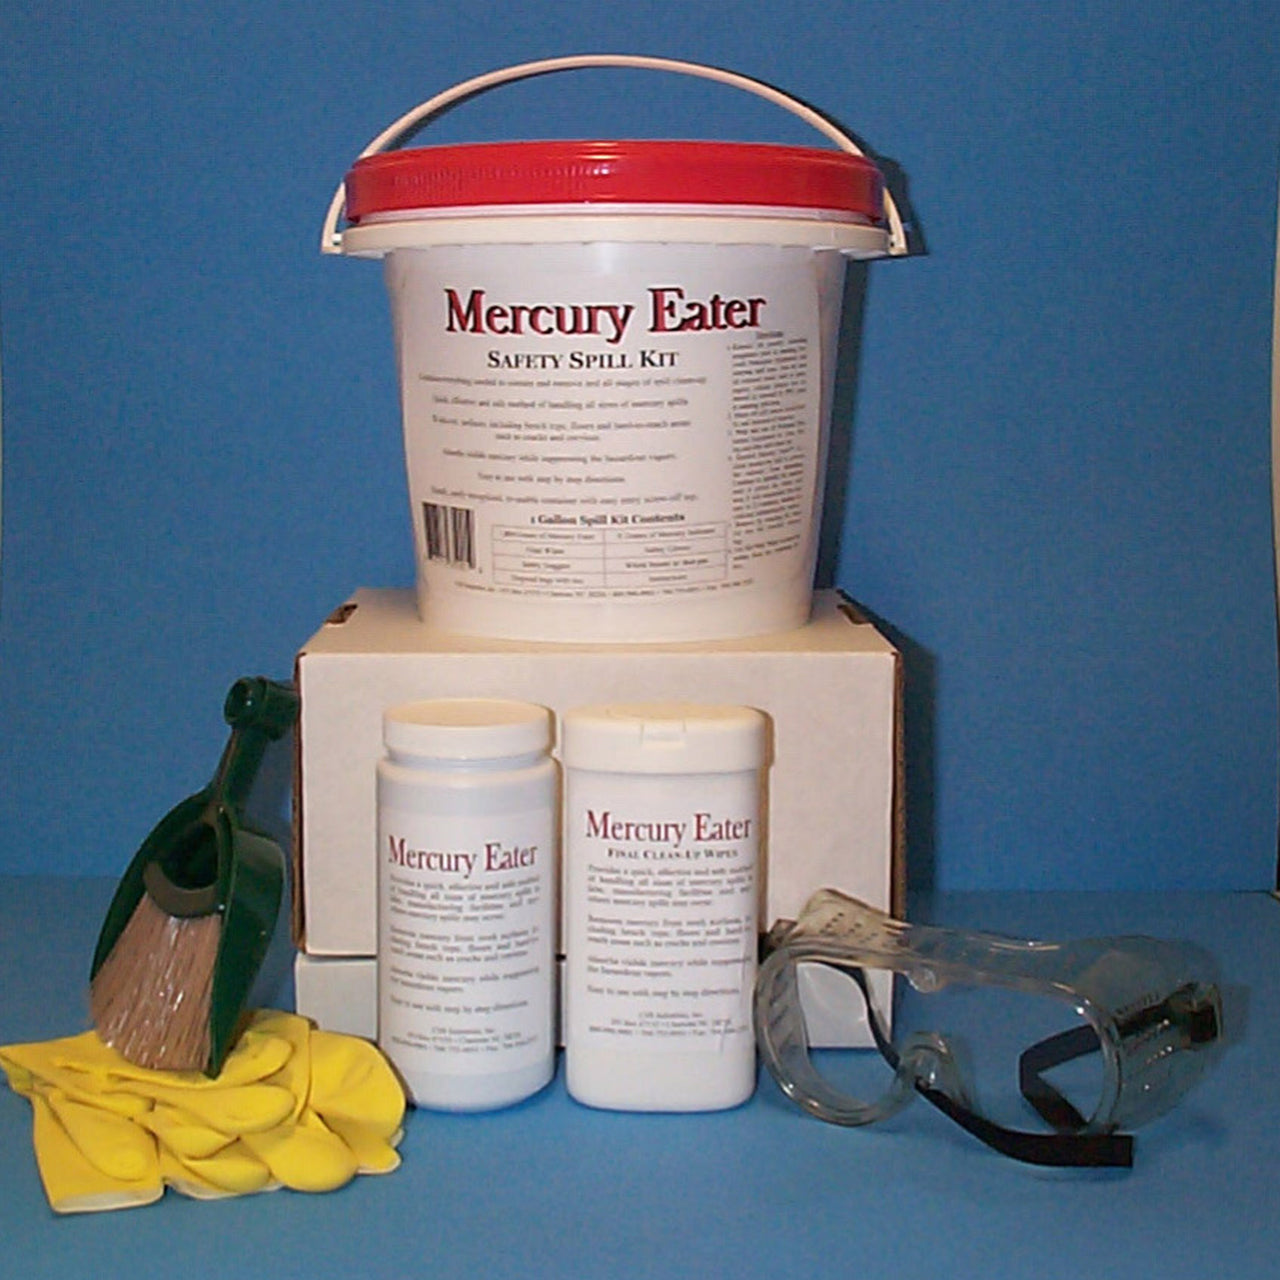 Mercury Eater Safety Spill Kit